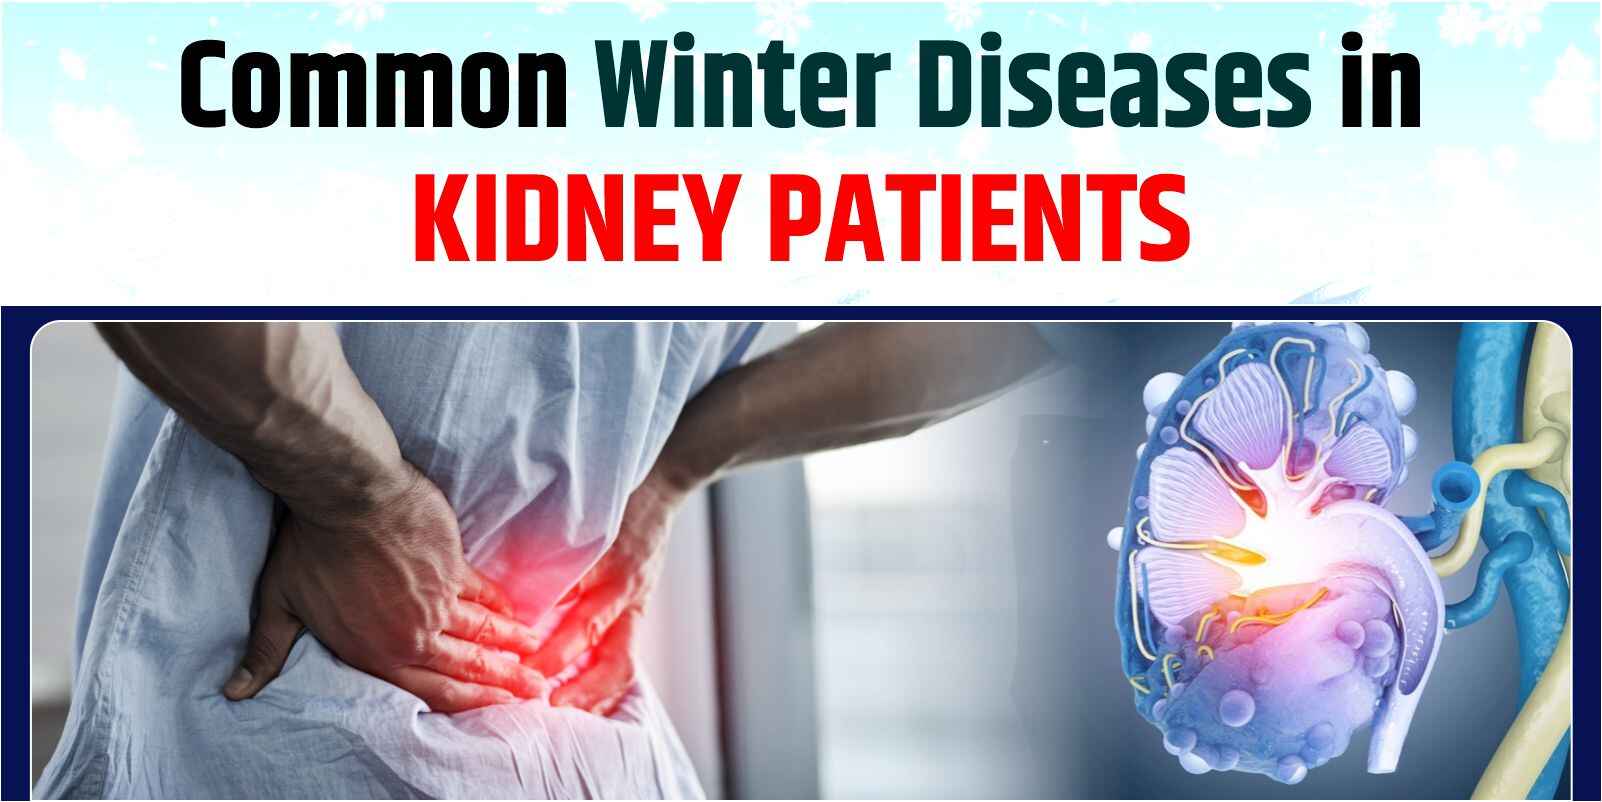 Common Winter Diseases in Kidney Patients